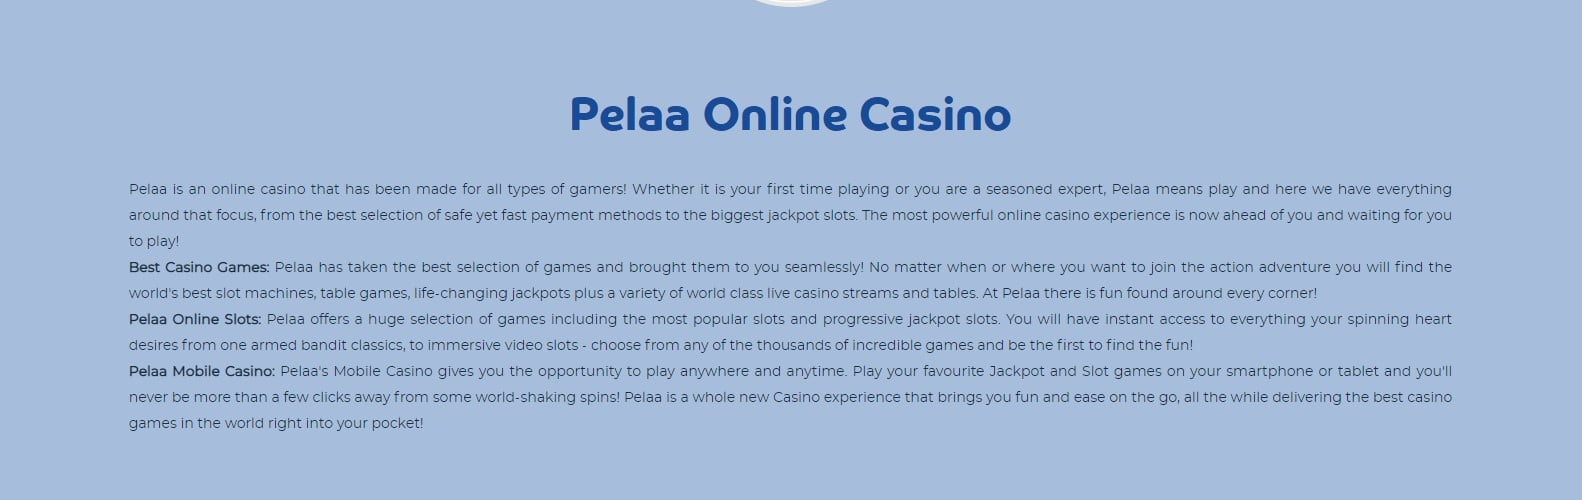 Pelaa online casino